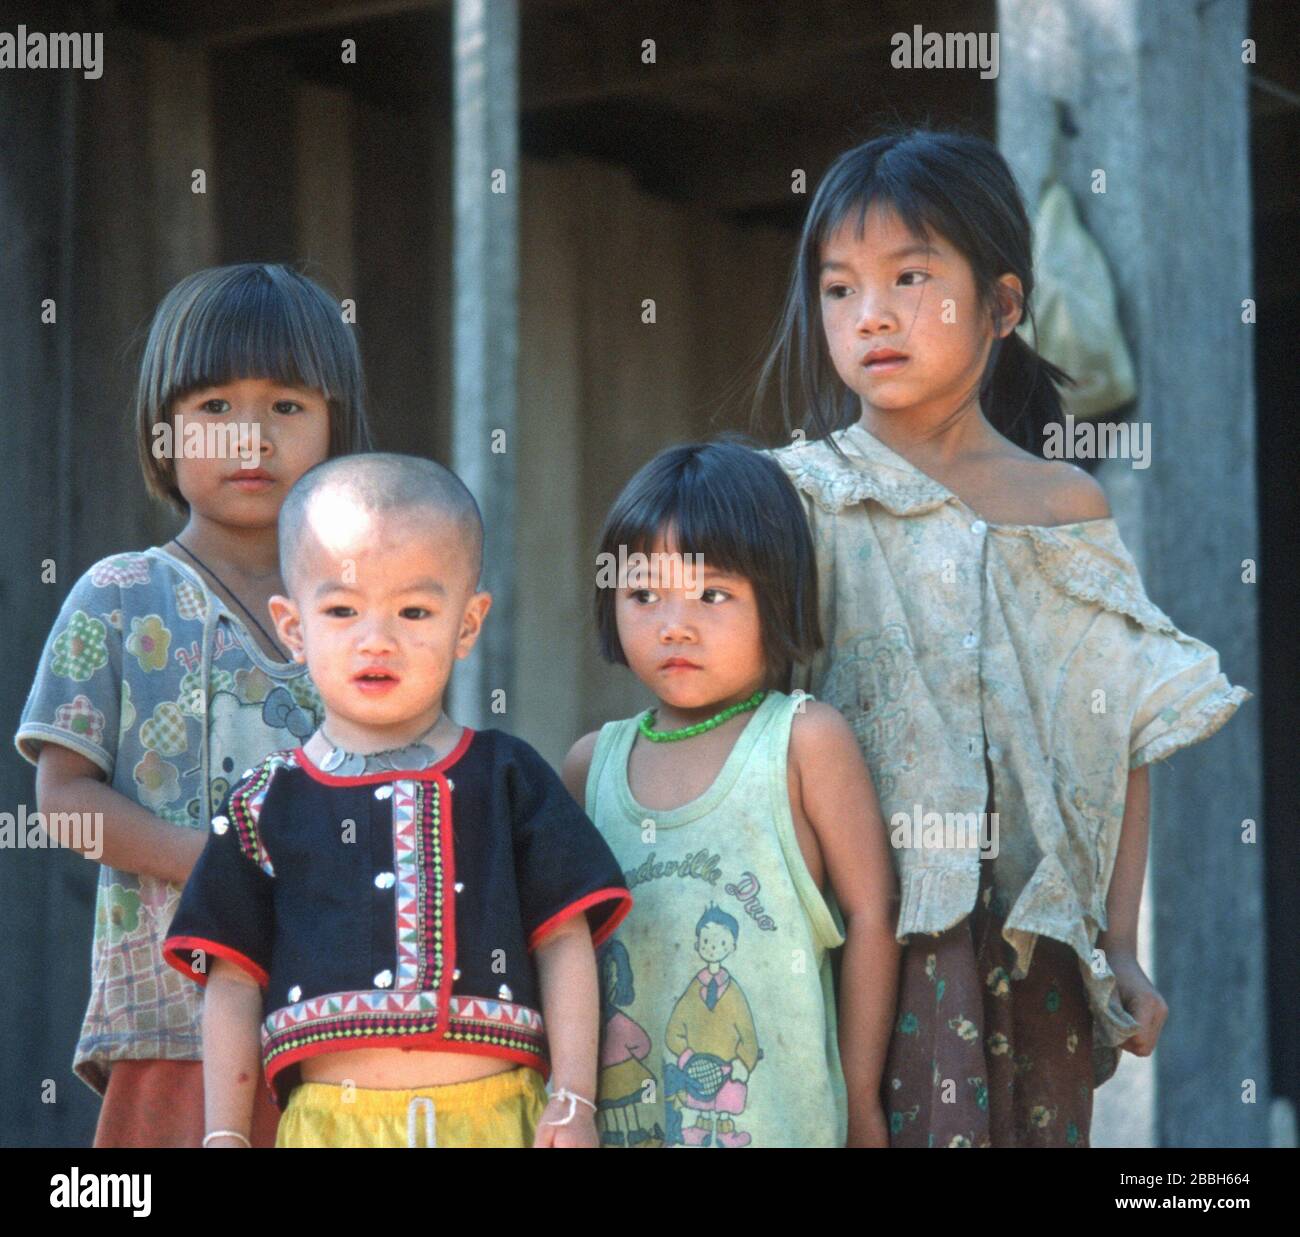 Quatre jeunes enfants lao dans un village au bord du Mékong, près de Luang Prabang, au Laos. Ils ont une gamme d'expressions allant de curieux à timide. Le plus jeune a une chemise traditionnelle et un collier de pièces de monnaie. La ville de Luang Prabang est classée au patrimoine mondial de l'UNESCO. Banque D'Images